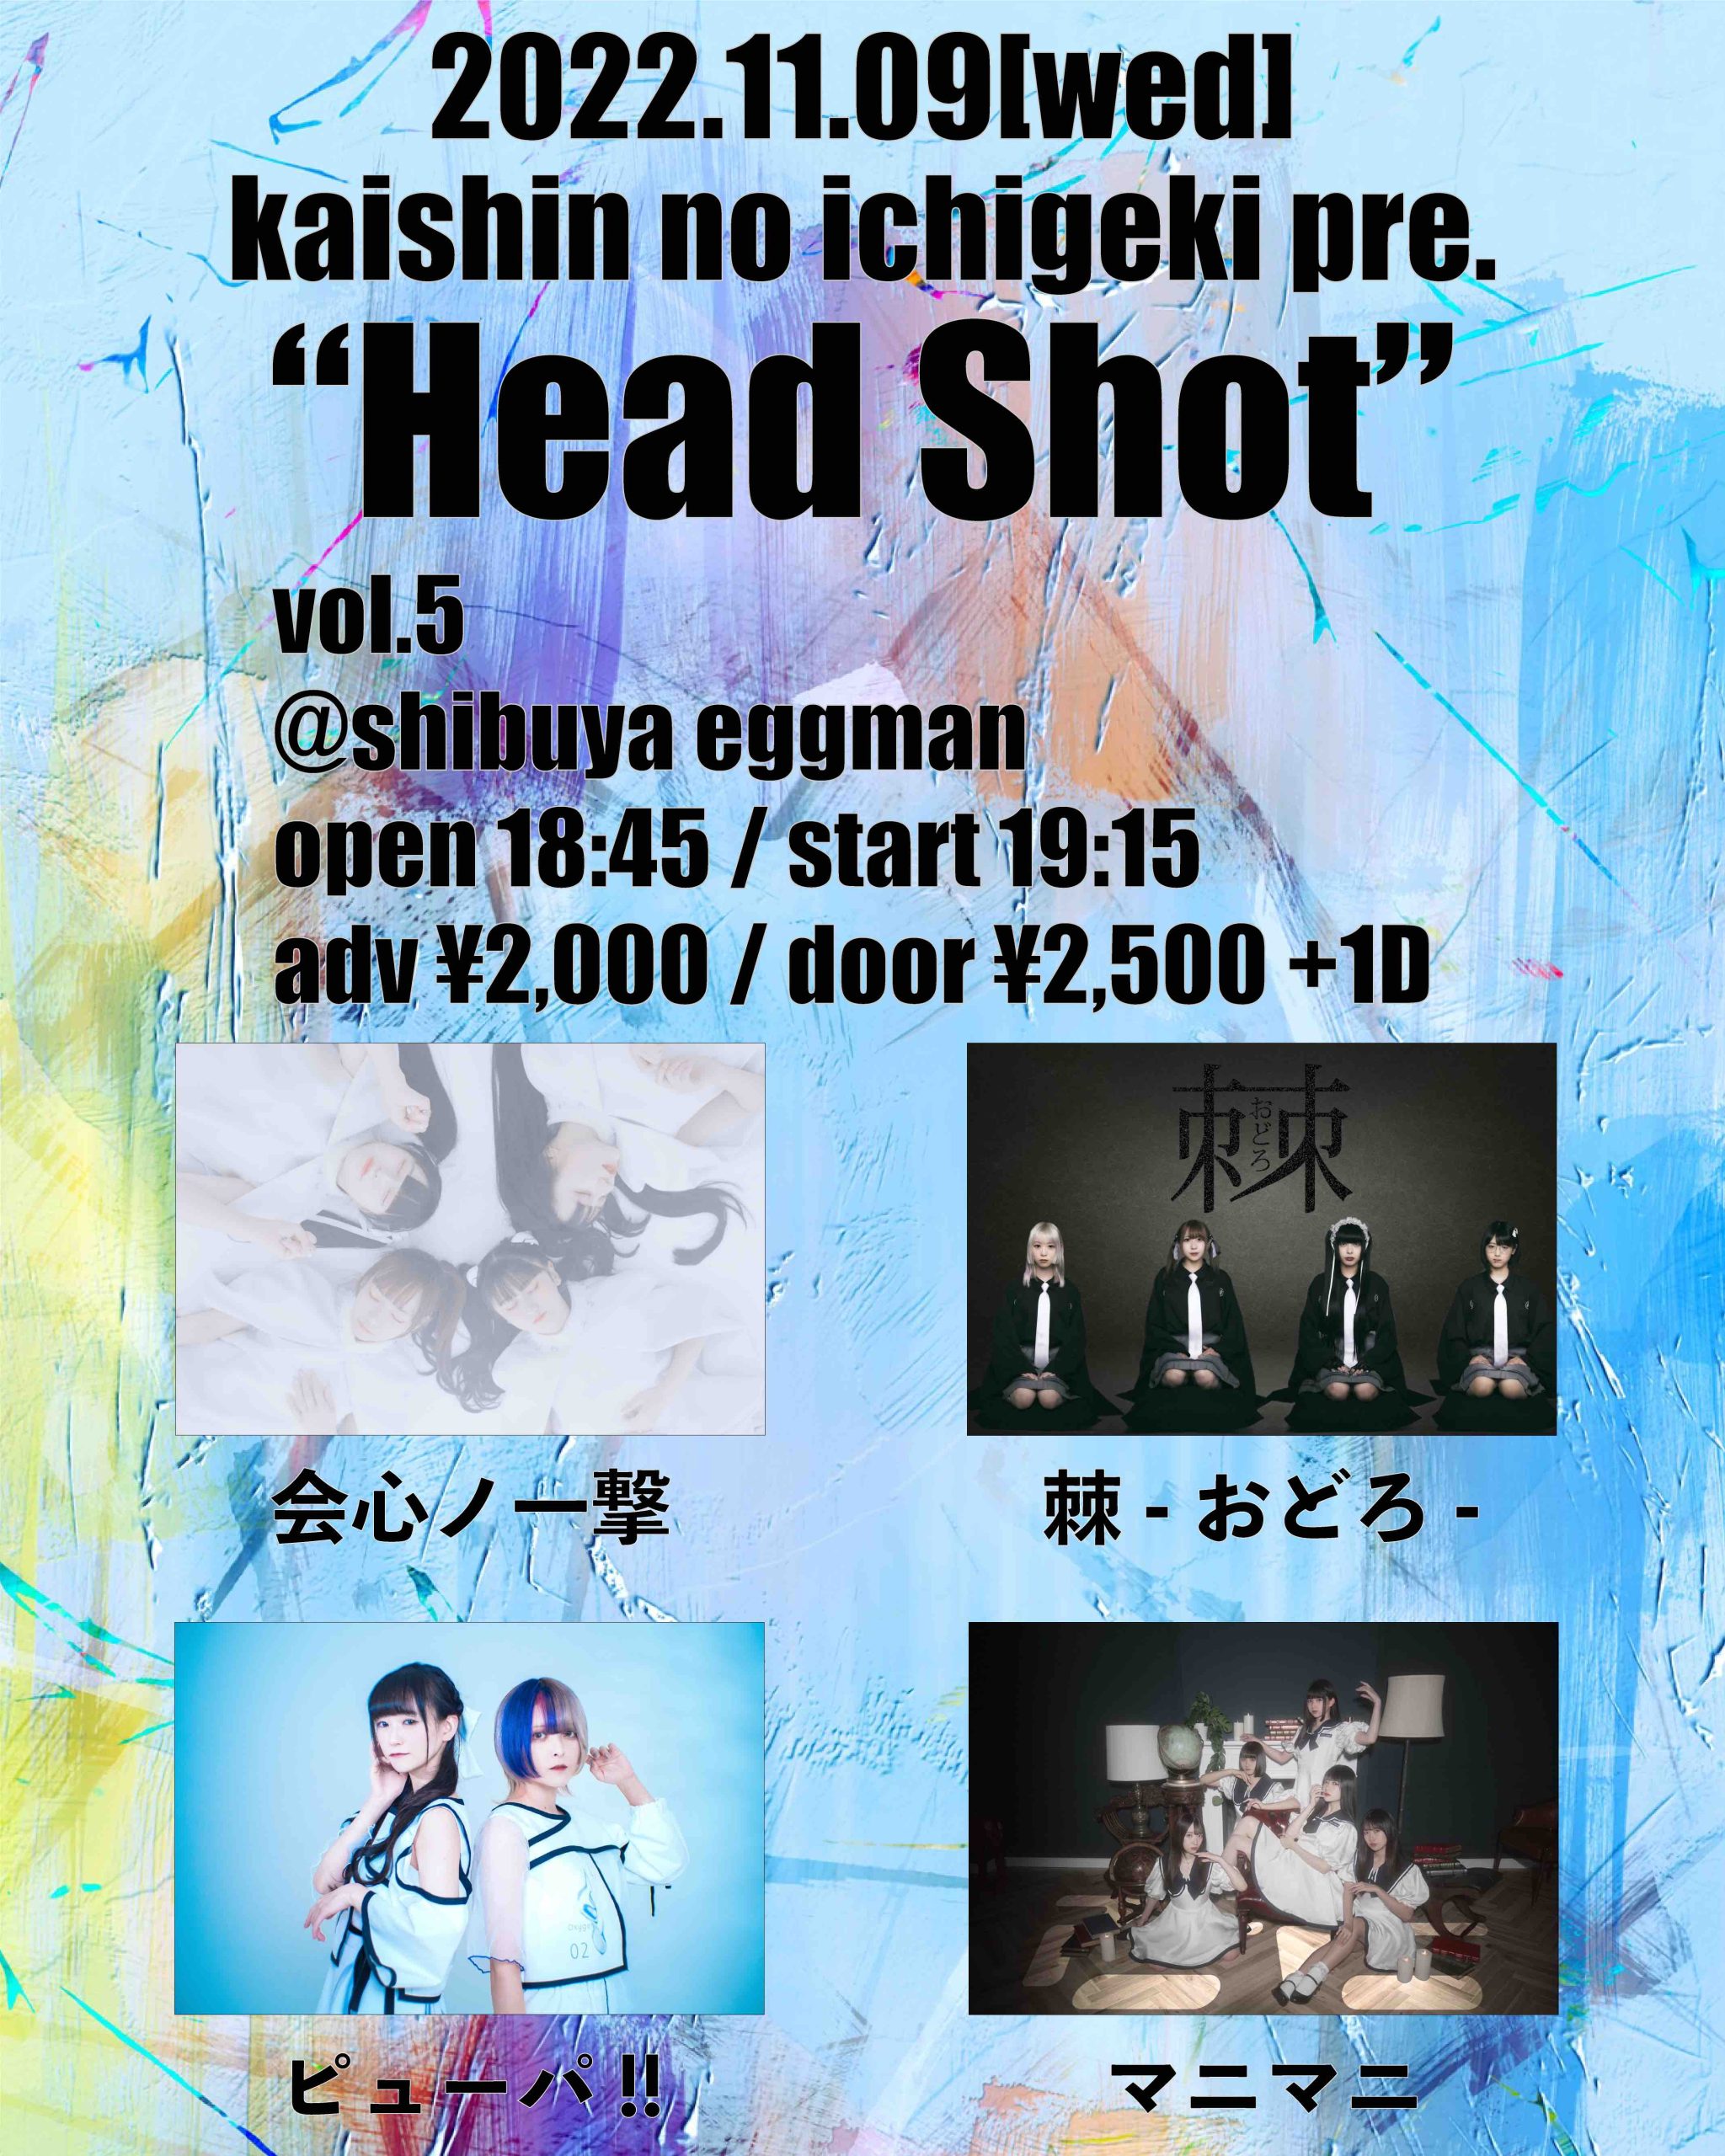 会心ノ一撃 presents 「Head Shot vol.5」